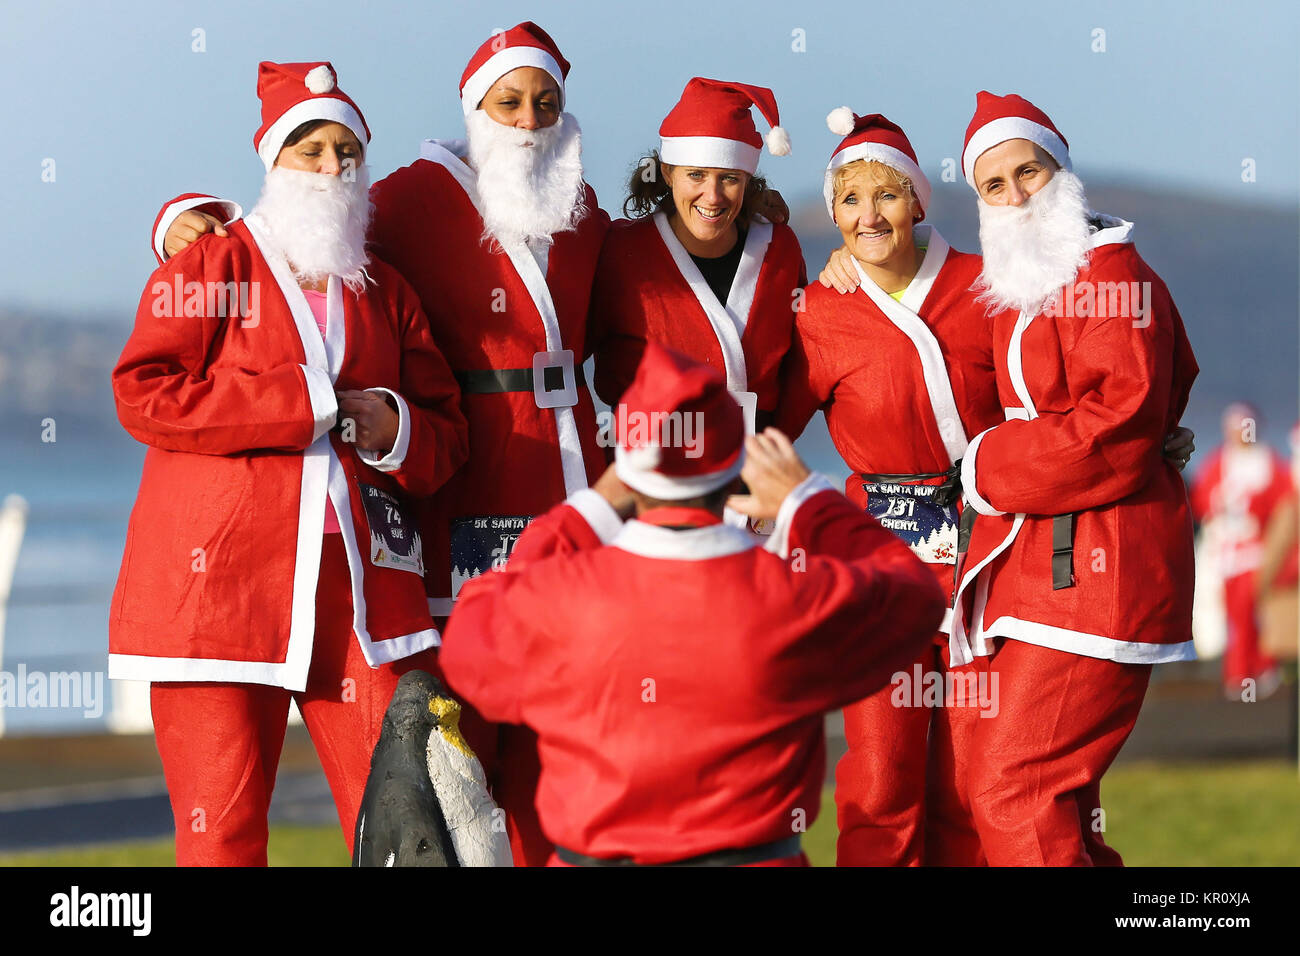 Im Bild: Läufer in Santa Claus Fancy Dress haben ihr Bild in diesem Jahr laufen im Aberavon, Wales, UK. Samstag, 16 Dezember 2017 Re: 500 peo Stockfoto